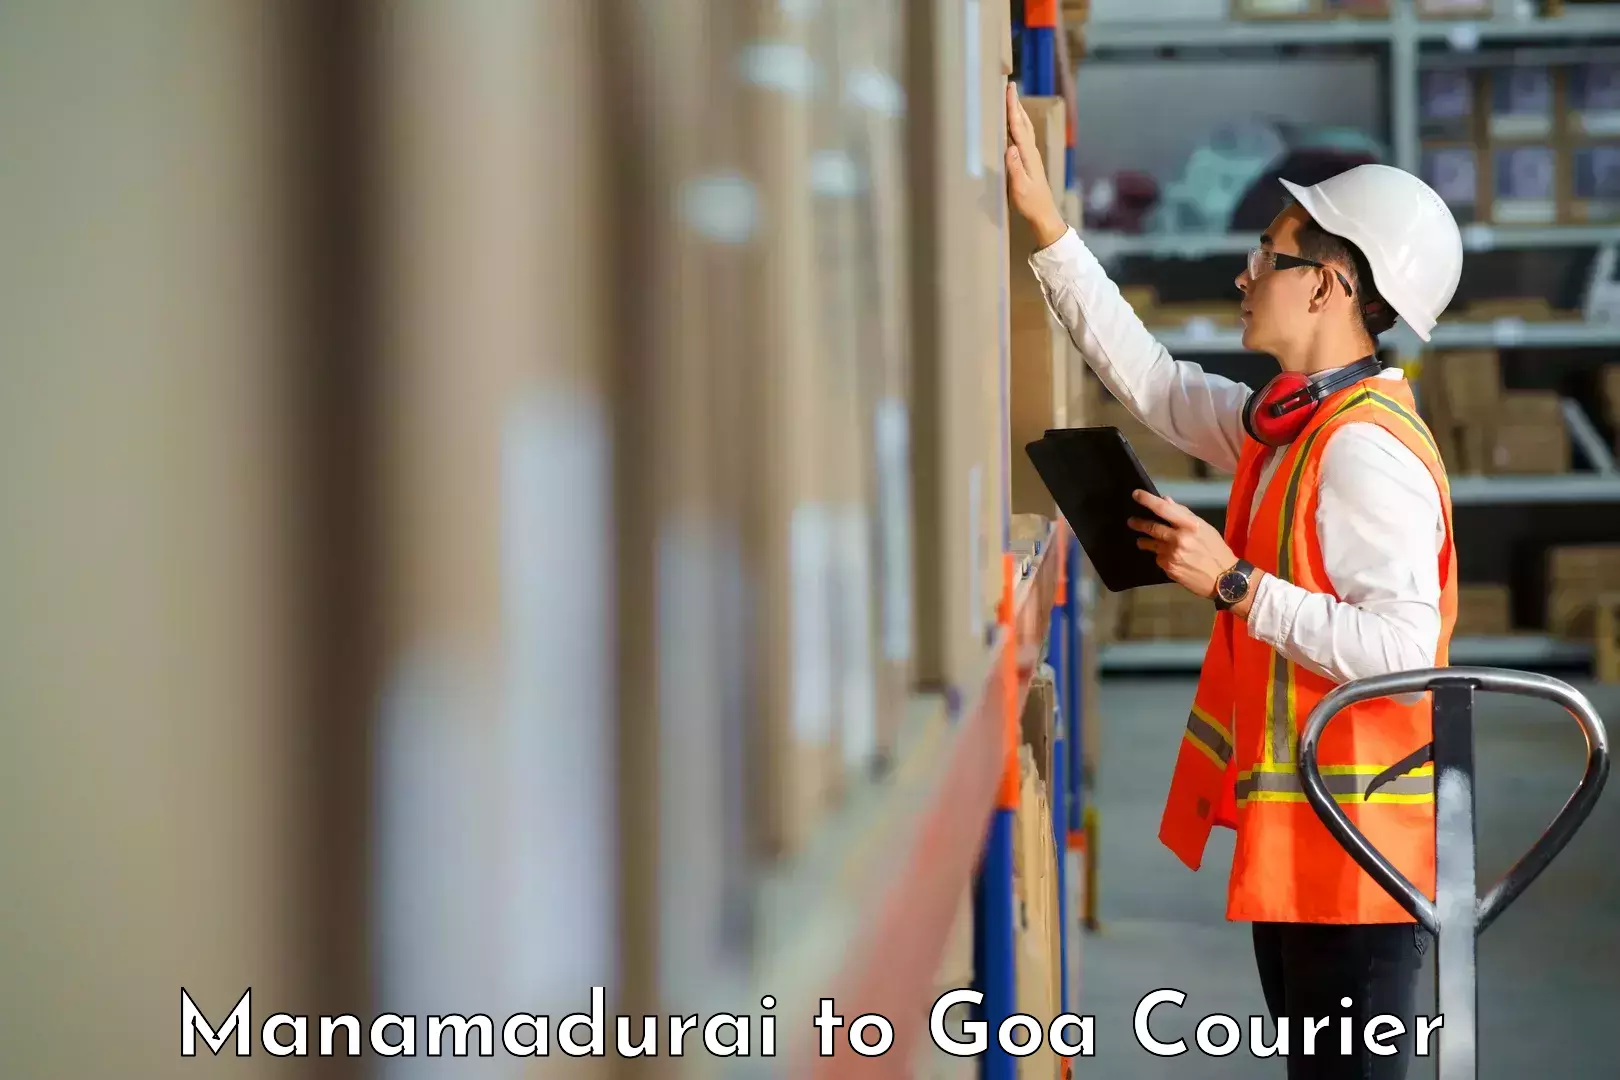 Courier service innovation Manamadurai to Mormugao Port